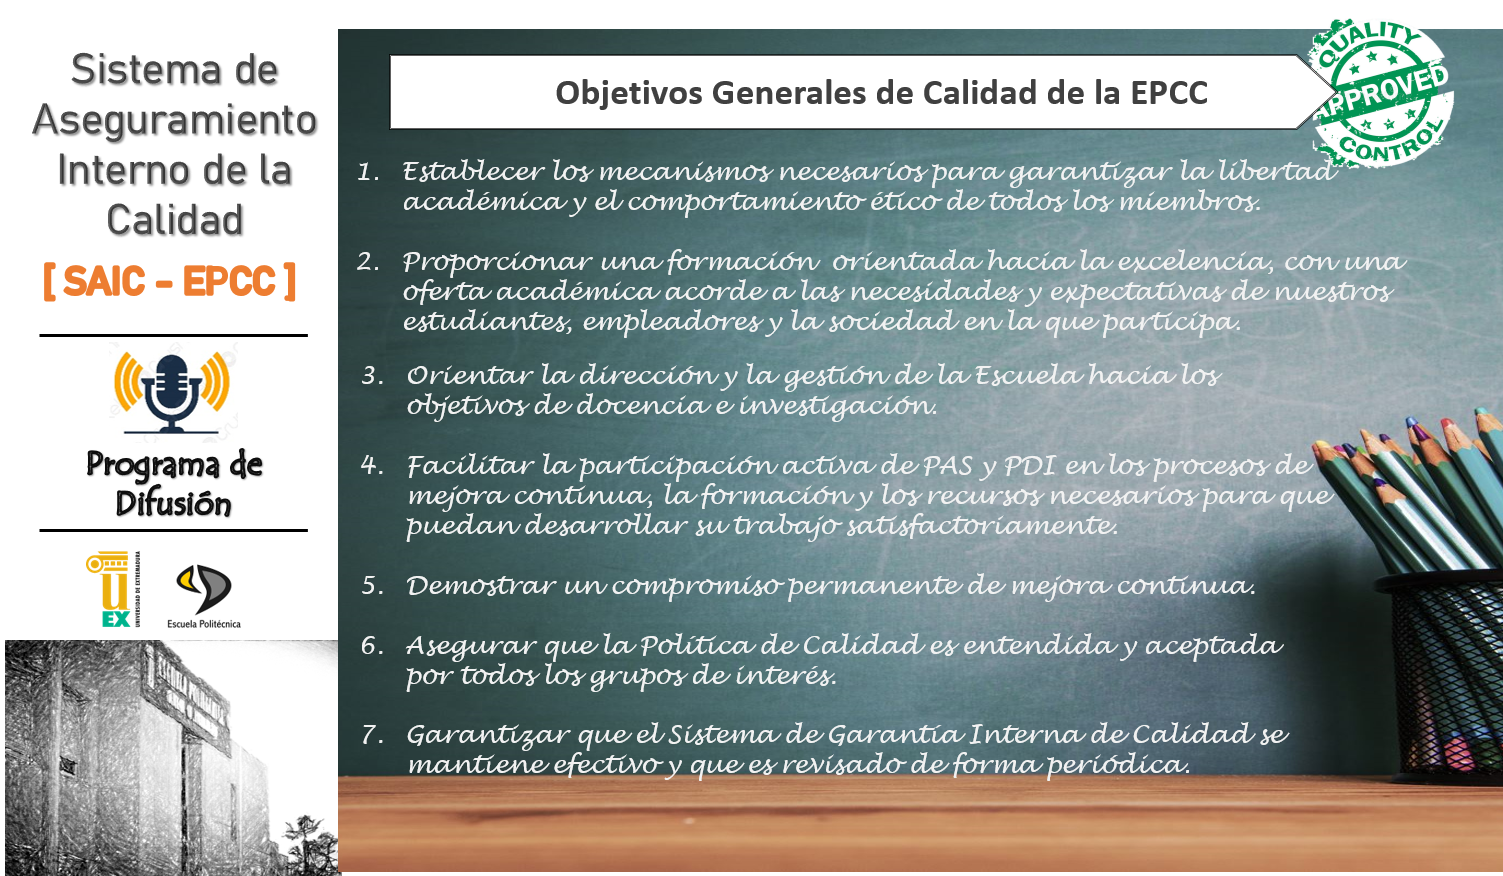 Objetivos Generales de Calidad de la EPCC